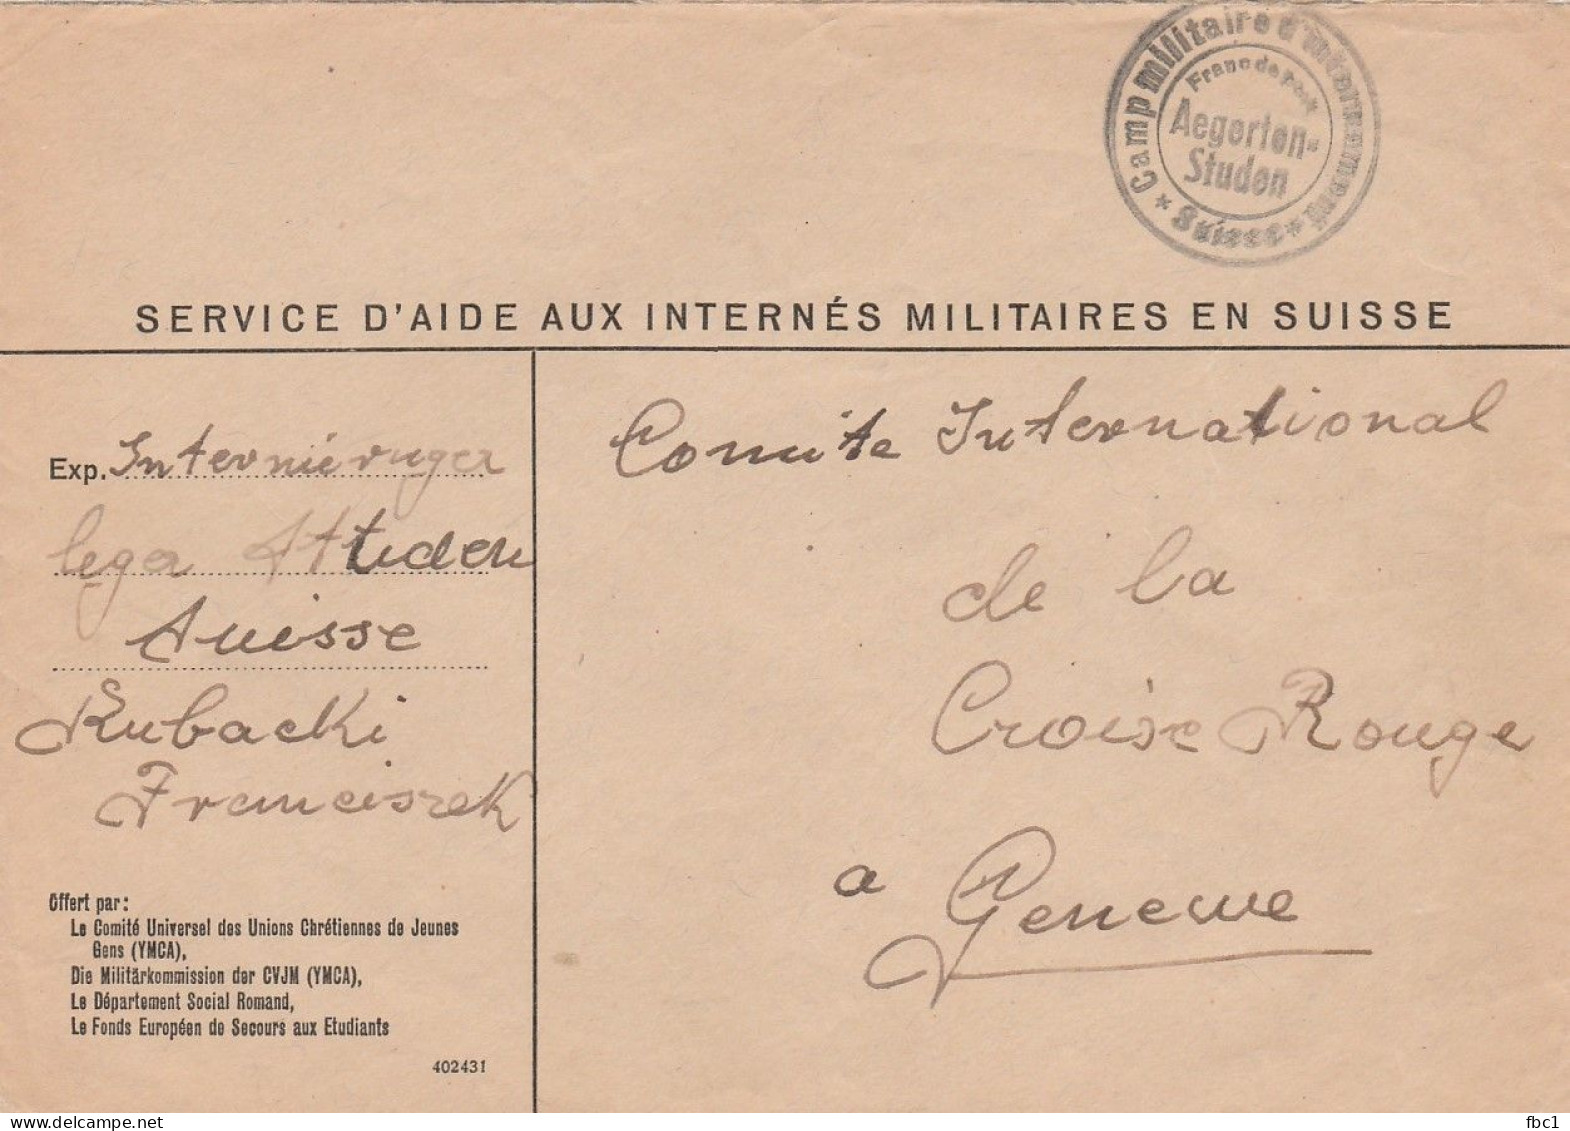 WW2 - Suisse - Camp Militaire D'internement D'Aegerten Studen Vers CICR à Genève - Postmarks